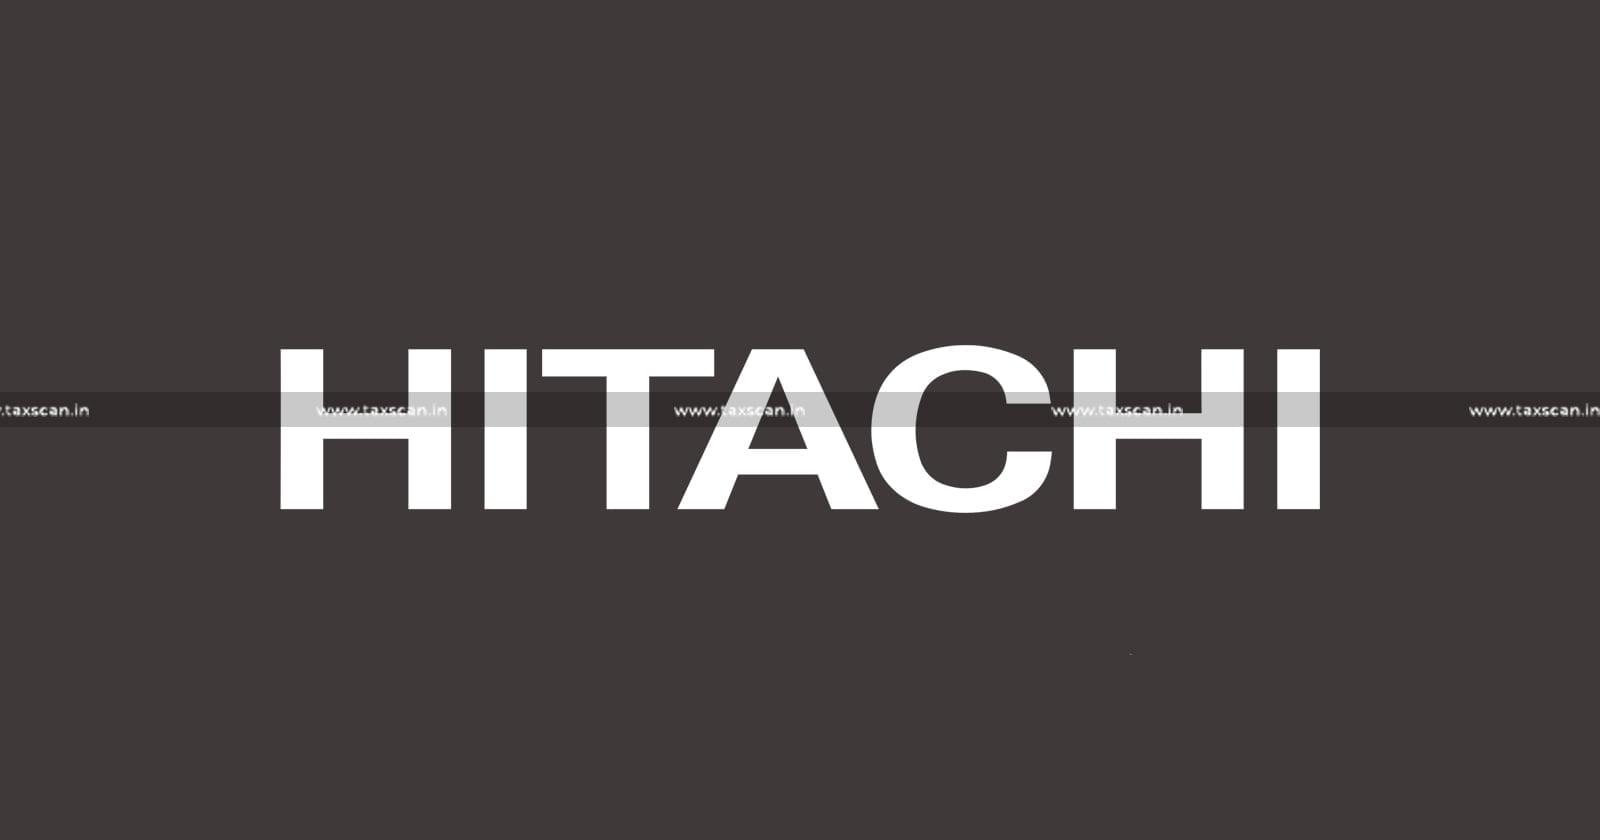 MBA Vacancy in Hitachi - CA Vacancy in Hitachi - CMA Vacancy in Hitachi - Hitachi careers - TAXSCAN